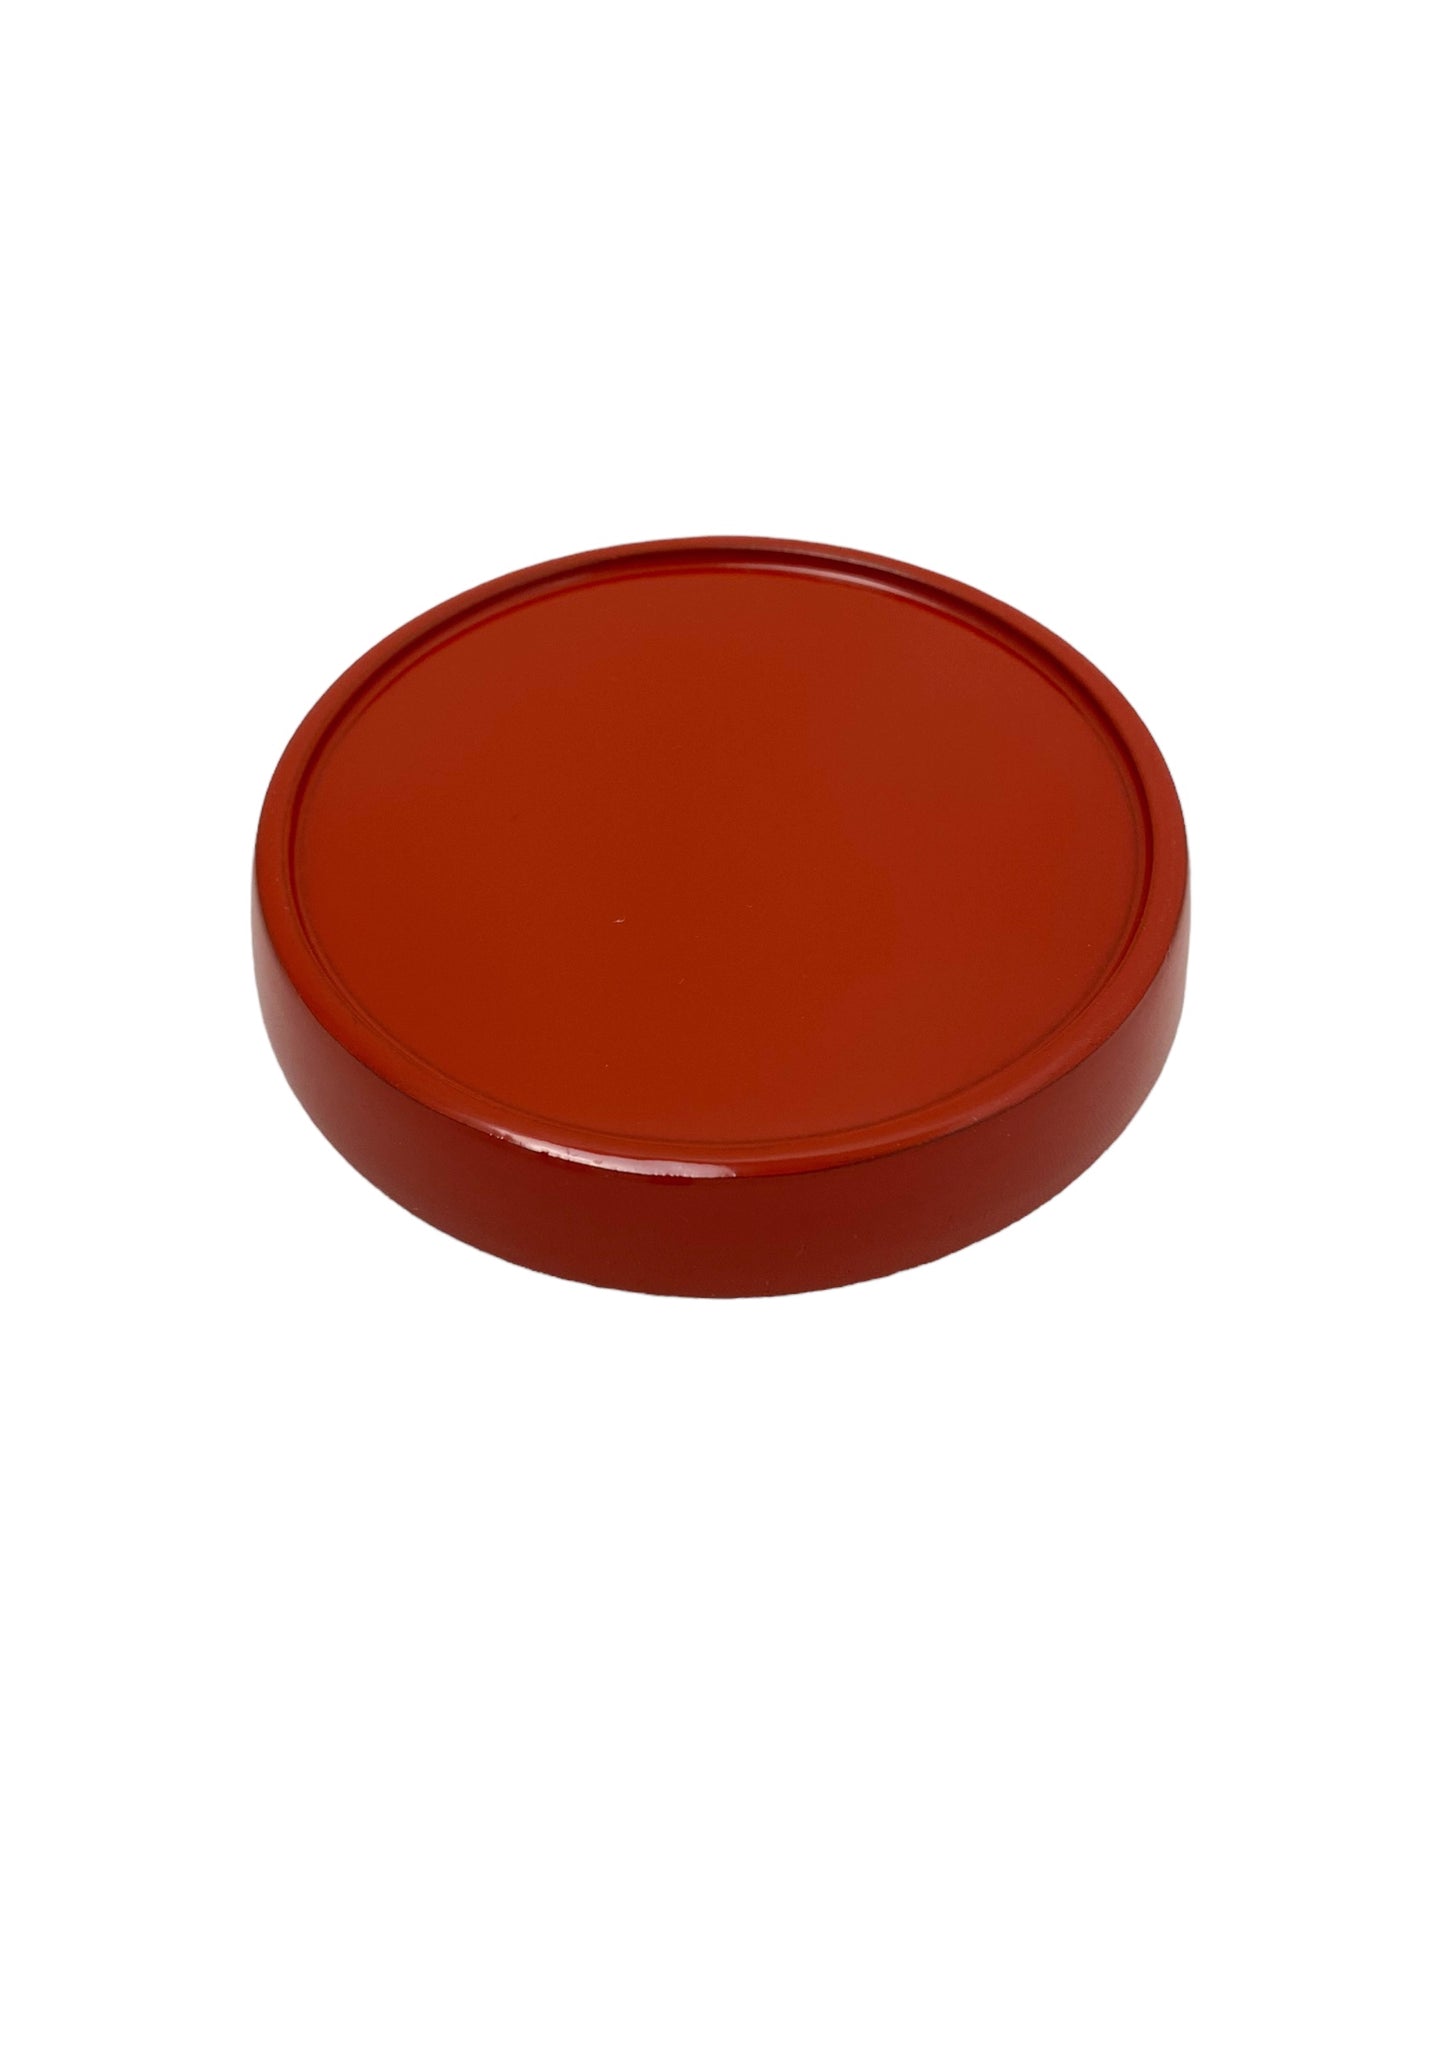 vermilion lacquered plate